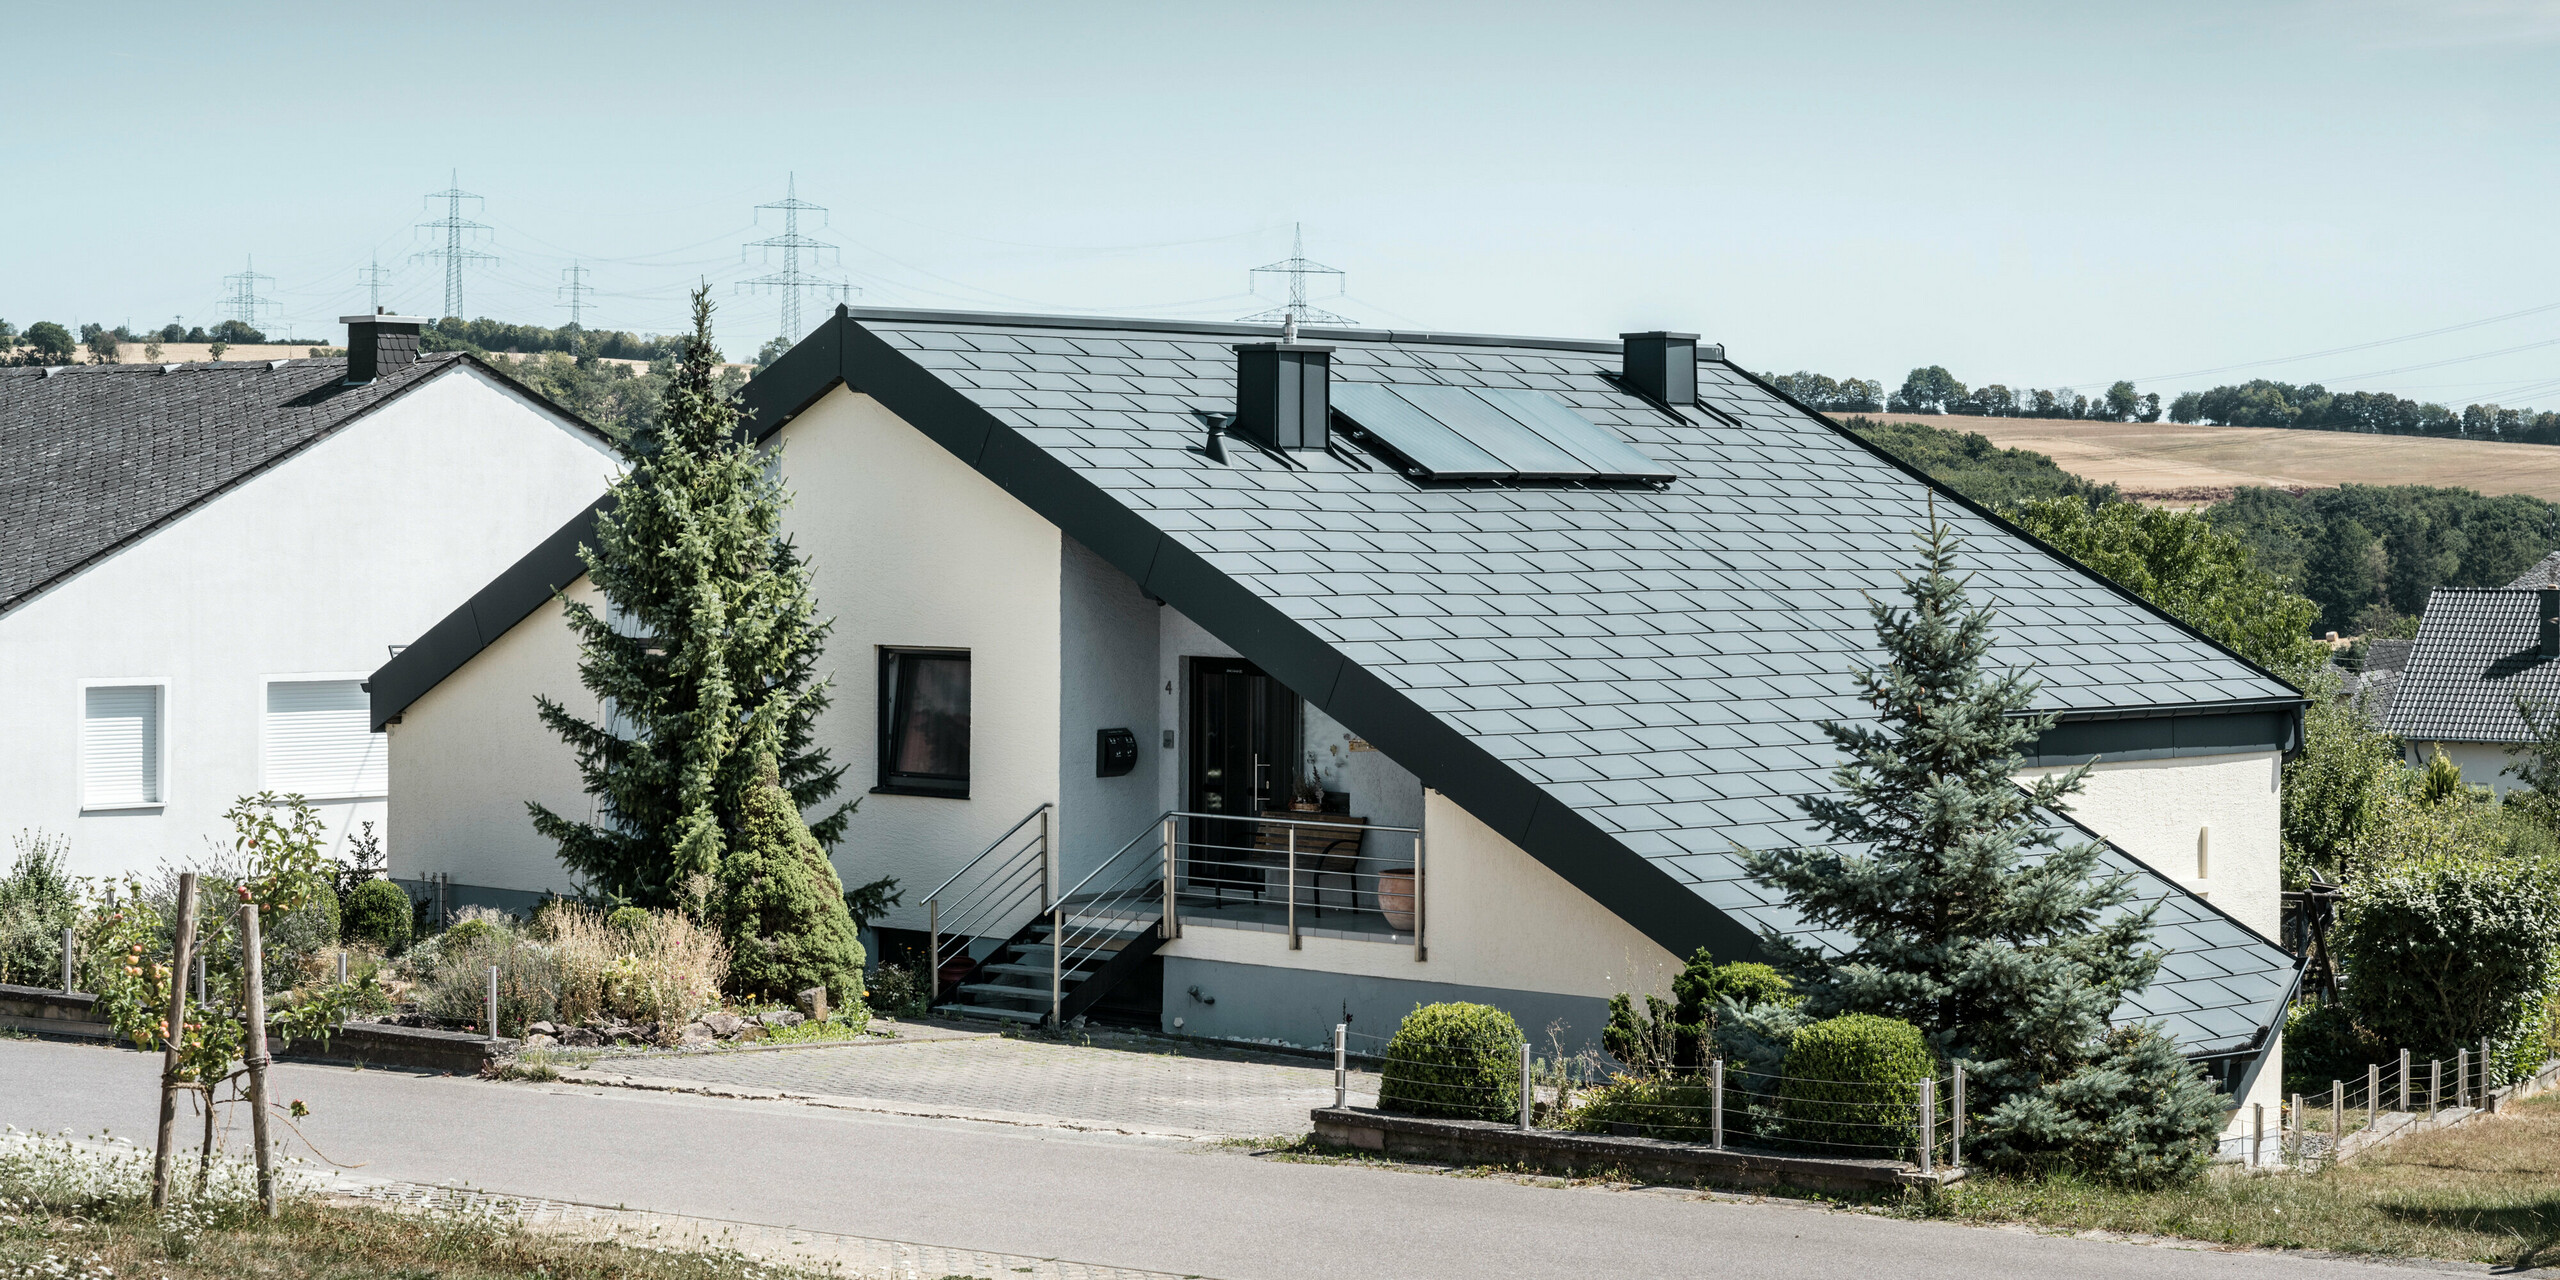 Einfamilienhaus in Newel-Besslich mit PREFA Dachplatte R.16 und PREFA Dachentwässerungssystem in anthrazit